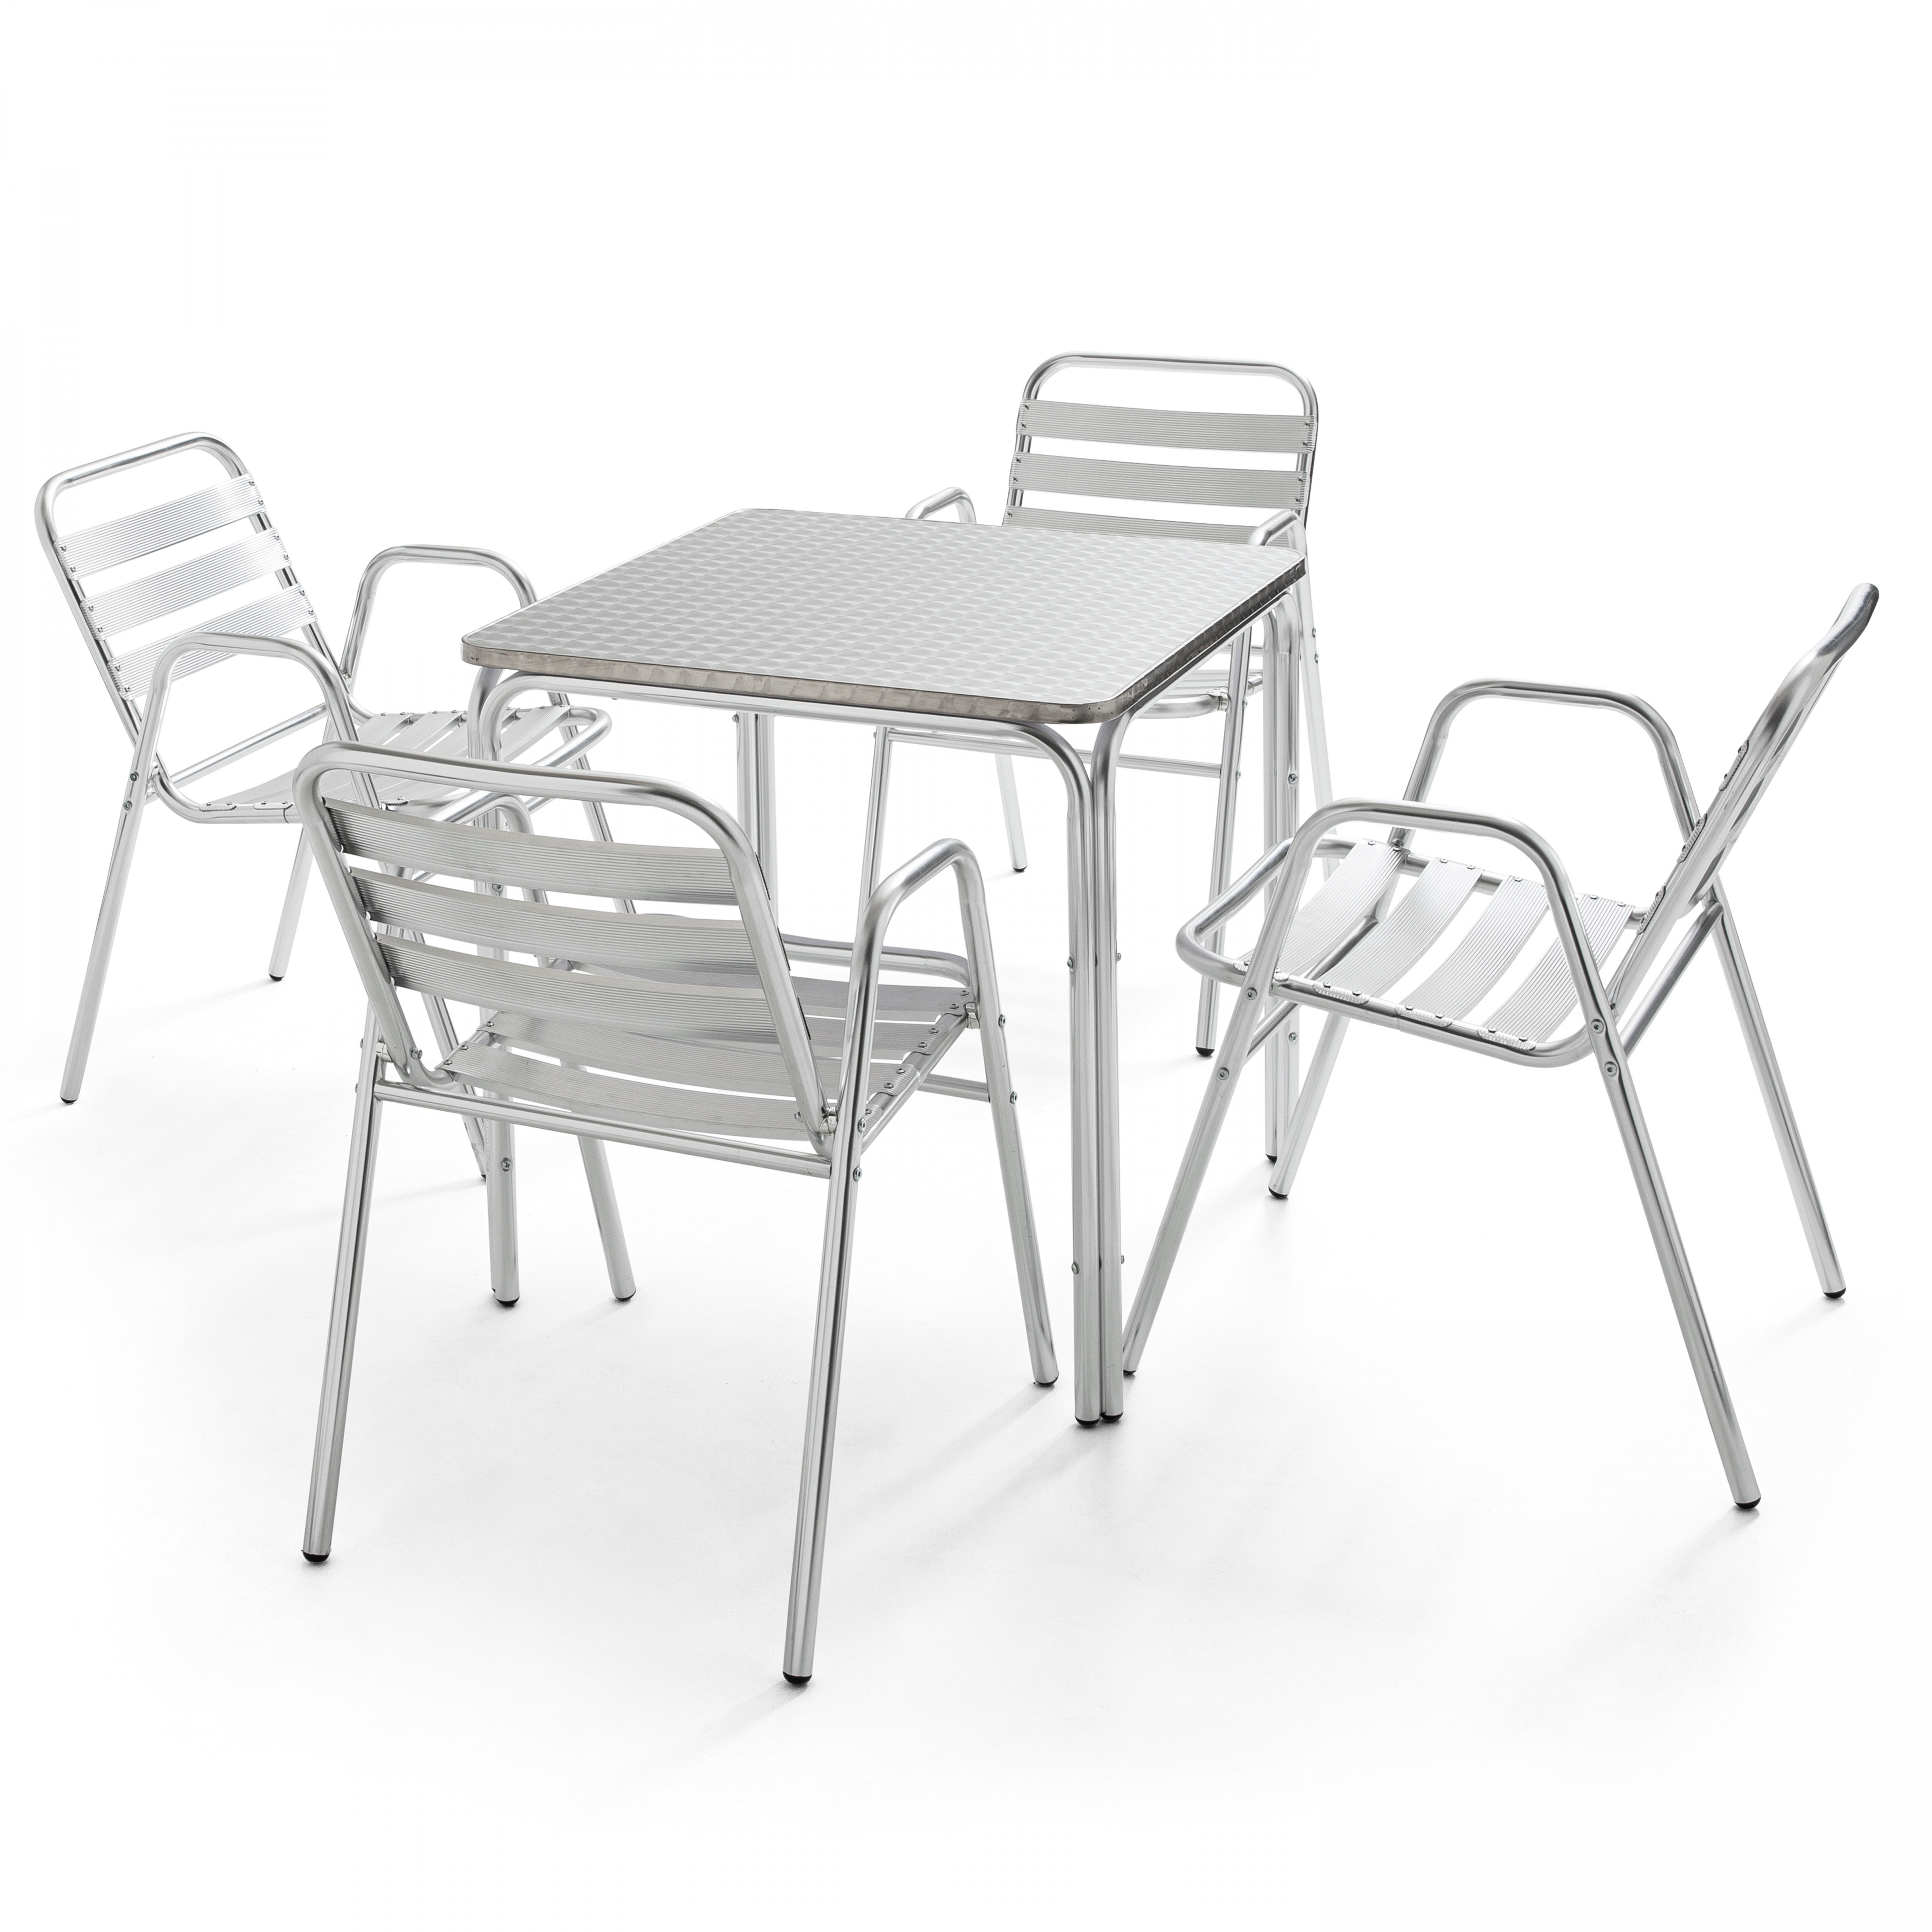 Table de jardin carrée 70 x 70 cm en aluminium et 4 chaises avec accoudoirs empilables